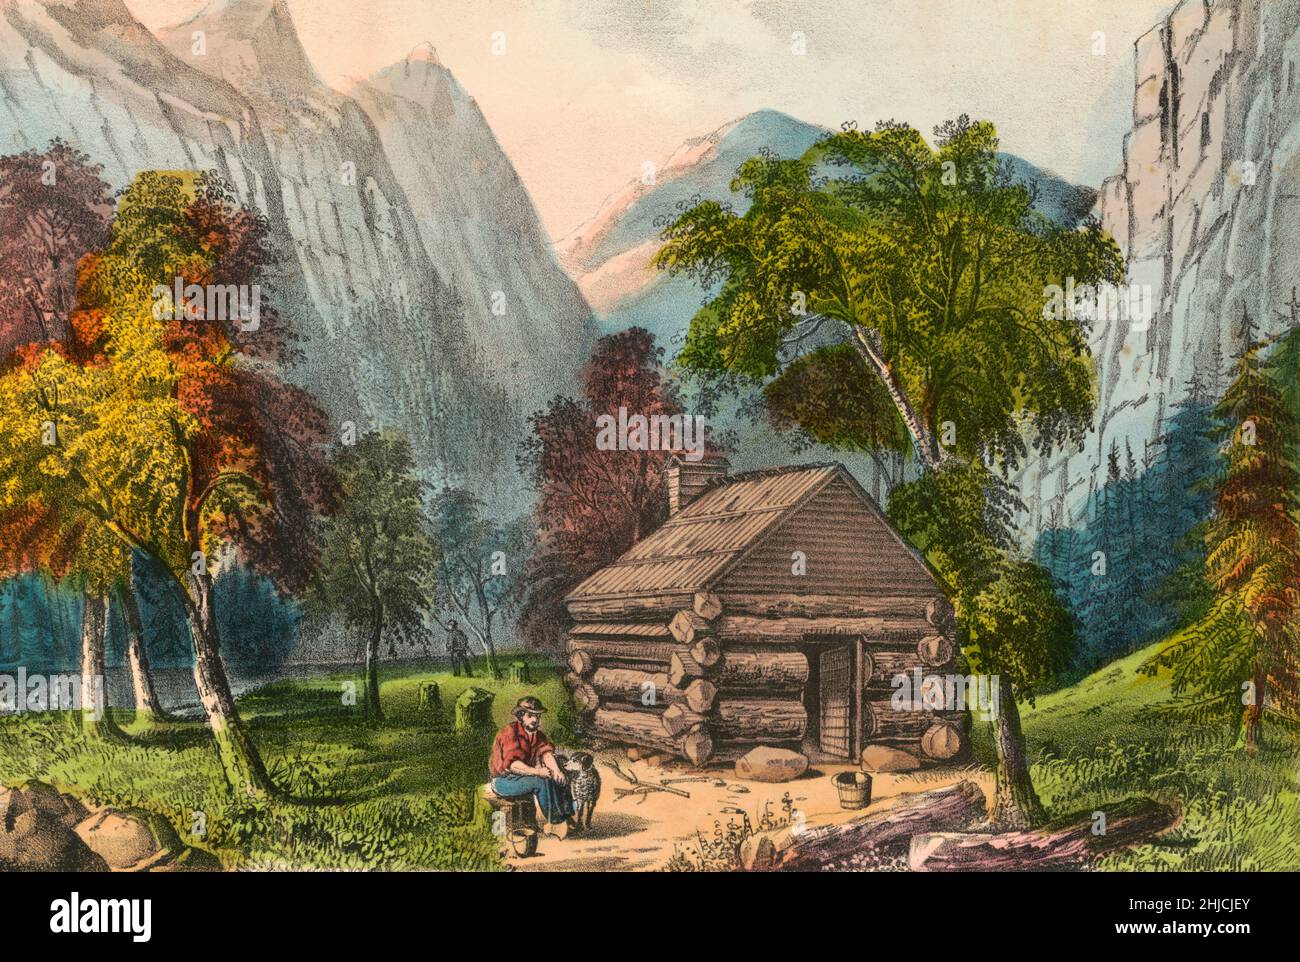 Pioneer Hütte, Yosemite Valley. Handkolorierte Lithographie, Currier & Ives, veröffentlicht um 1856-1907. Stockfoto